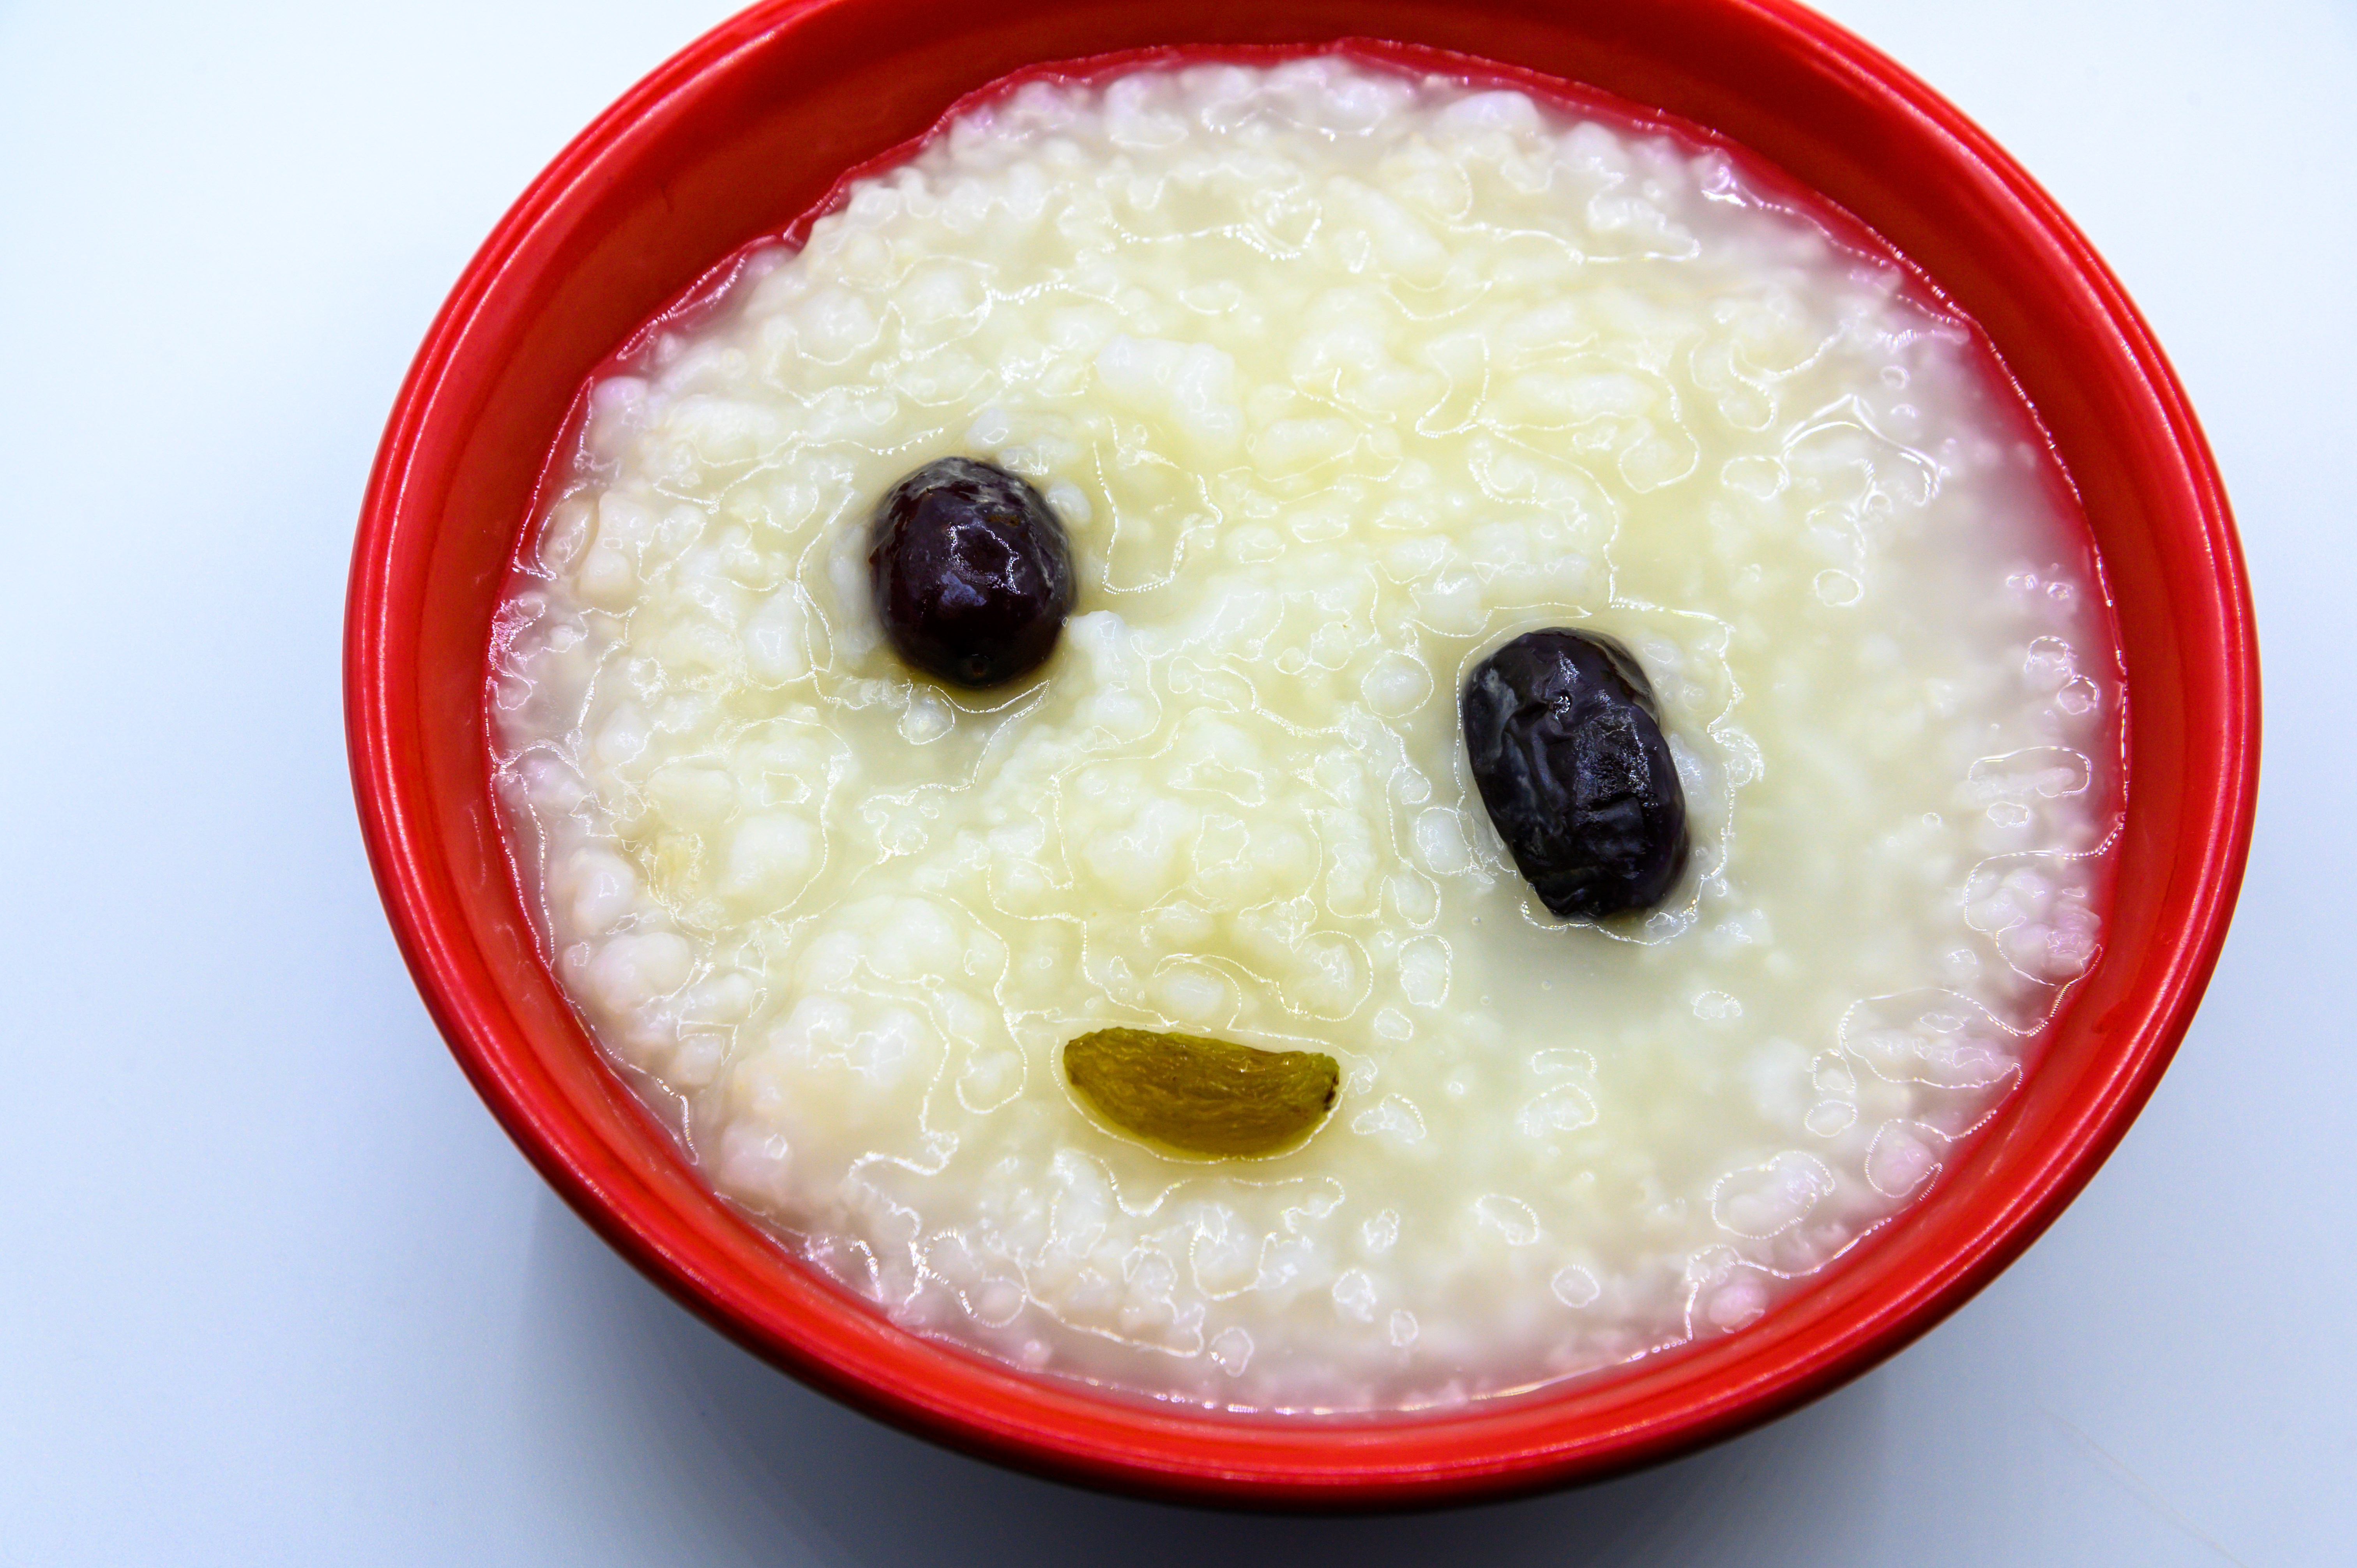 粥 白米粥 大米粥 米 大米 稻米 水稻 热的 暖的 滋补 温暖 葡萄干